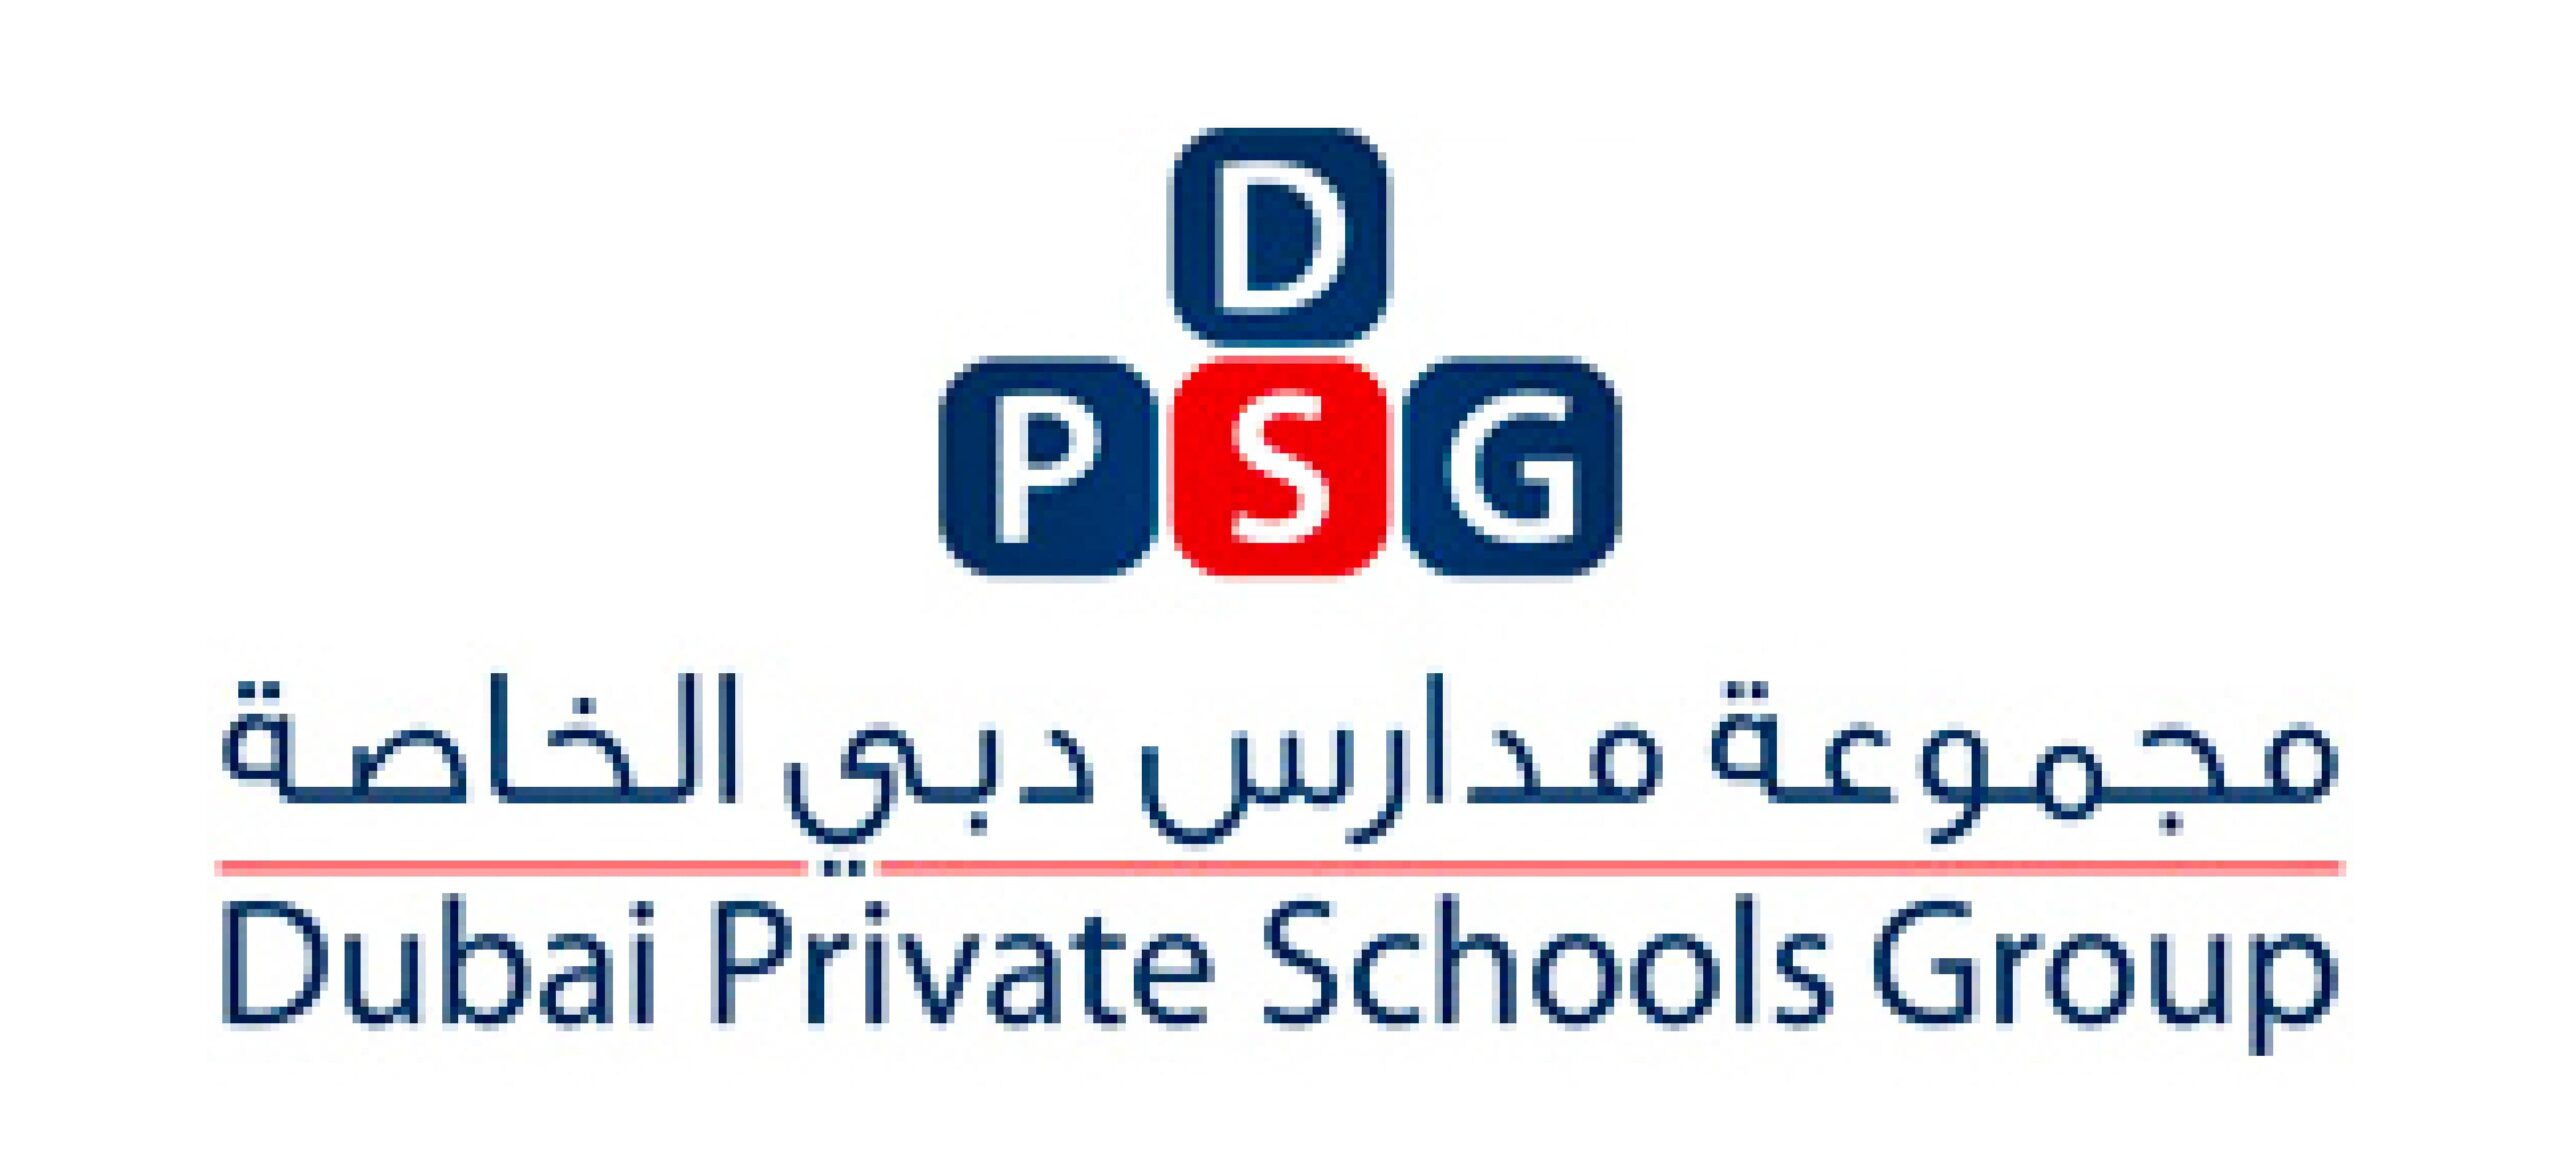 Dubai Private School Group